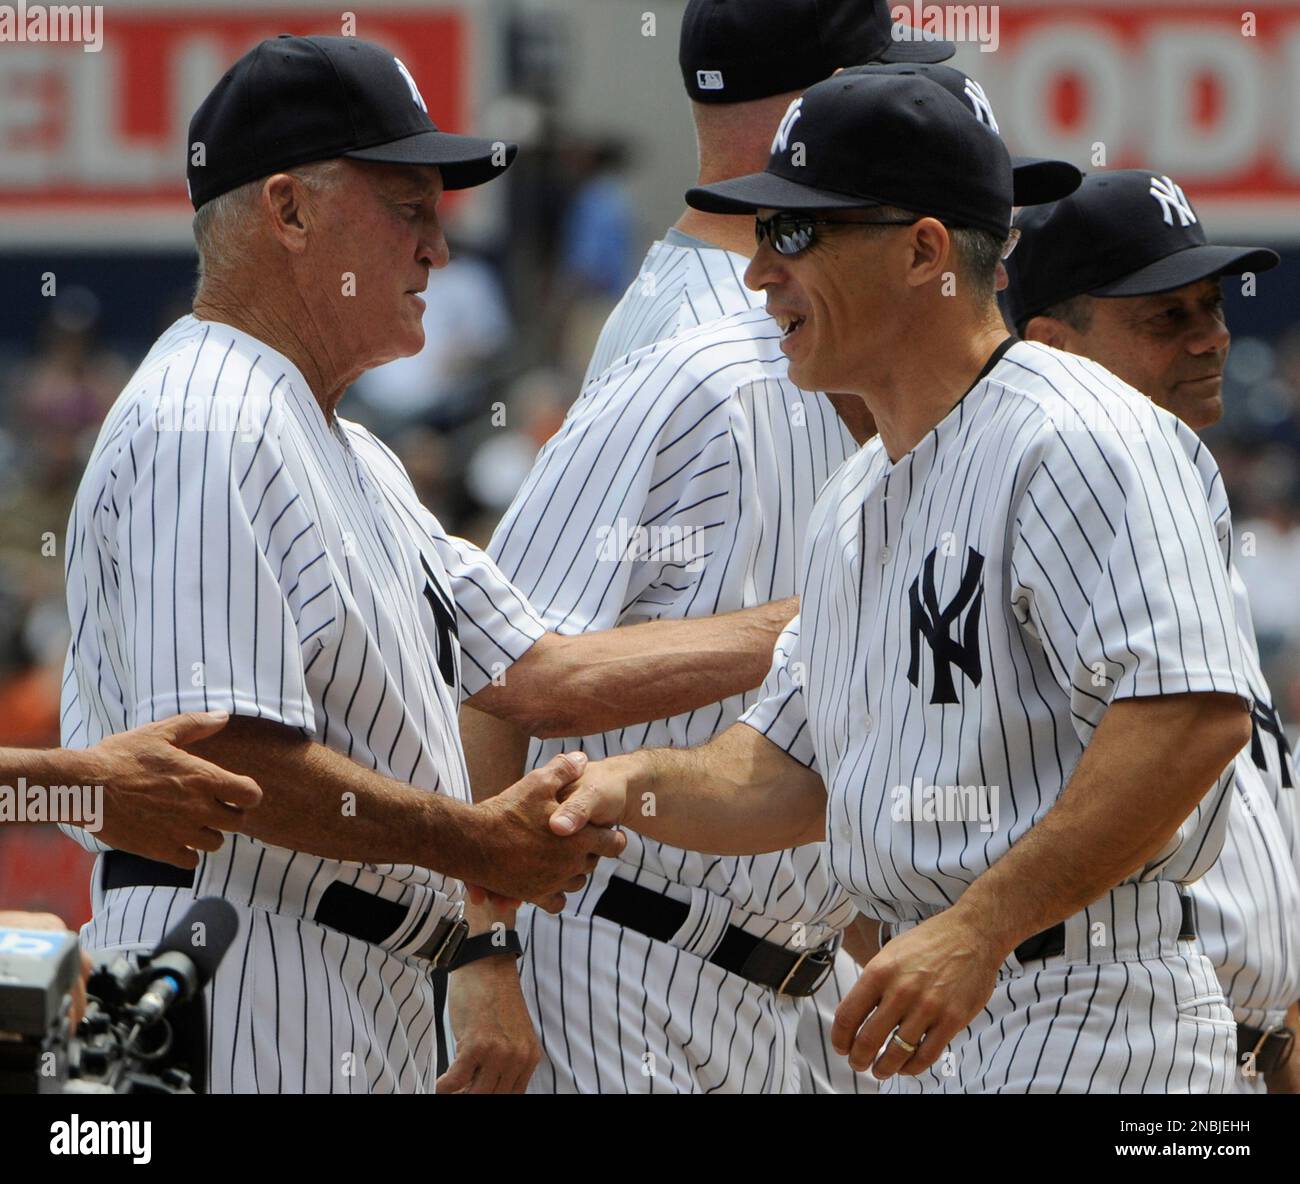 Former New York Yankees catcher Joe Girardi, right, shakes hands